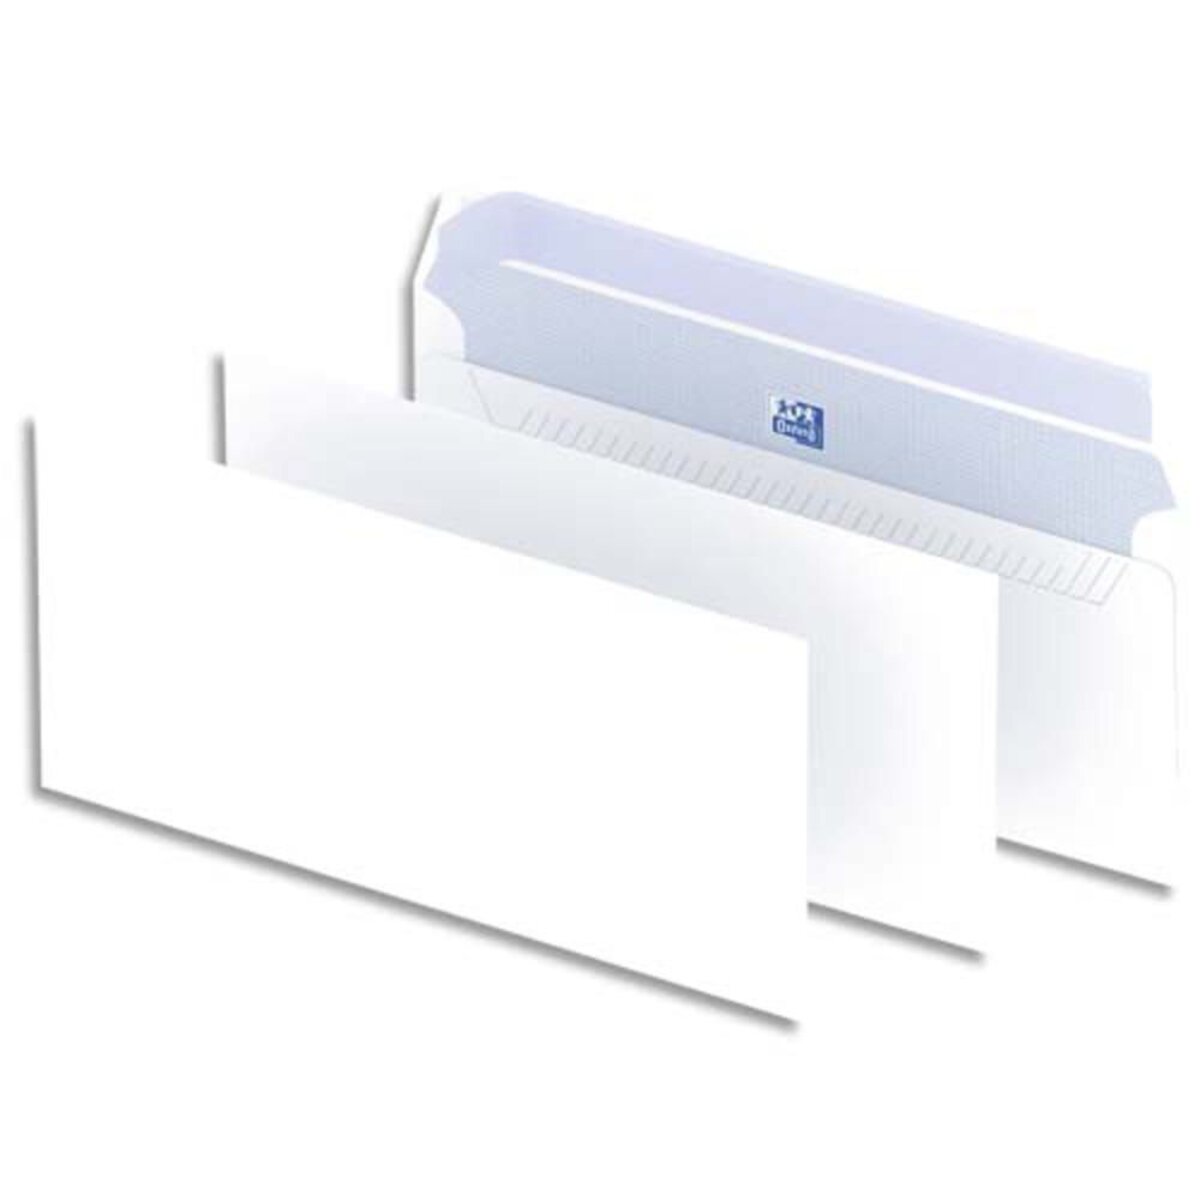 Enveloppes DL 110x220 mm blanc 80g avec fenêtre 35x100 mm (boîte de 500) -  enveloppe longue blanc blanche recyclé recyclée petite fenetre envellope  vierge gpv patte siligom petit format 220x110 110x220 SPC580747